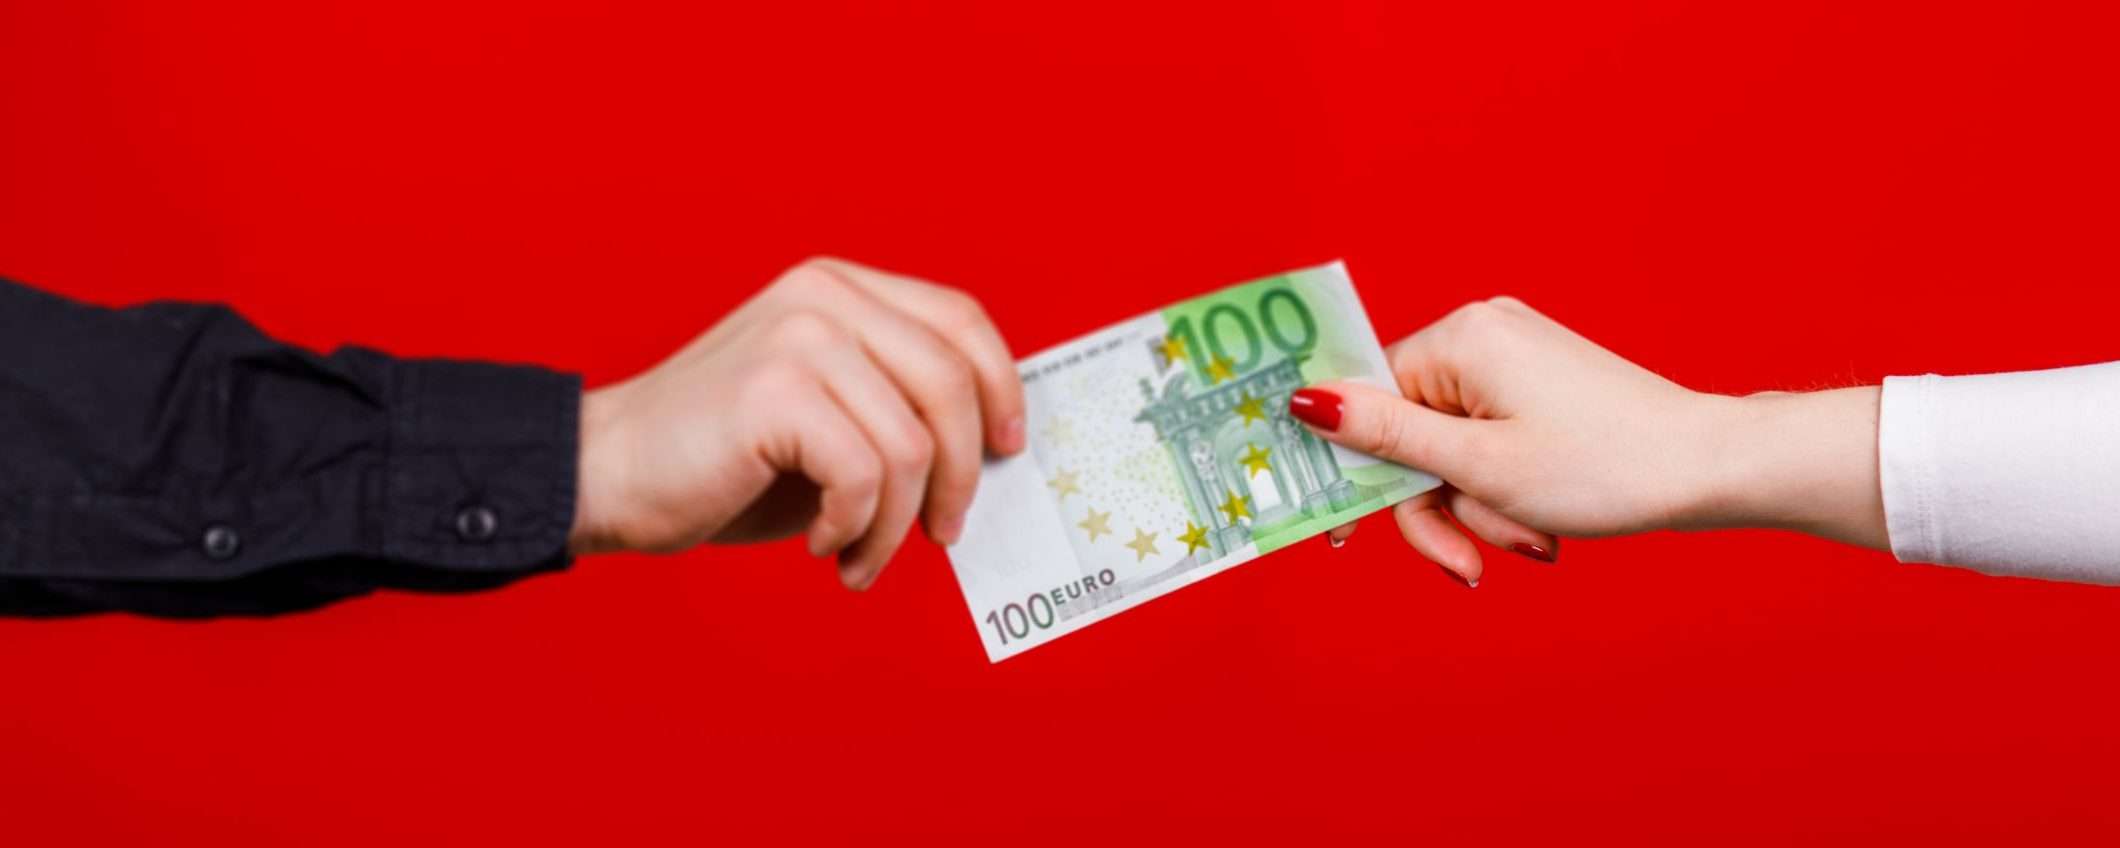 Buoni spesa Vodafone, ultimo giorno per ottenere 100 euro